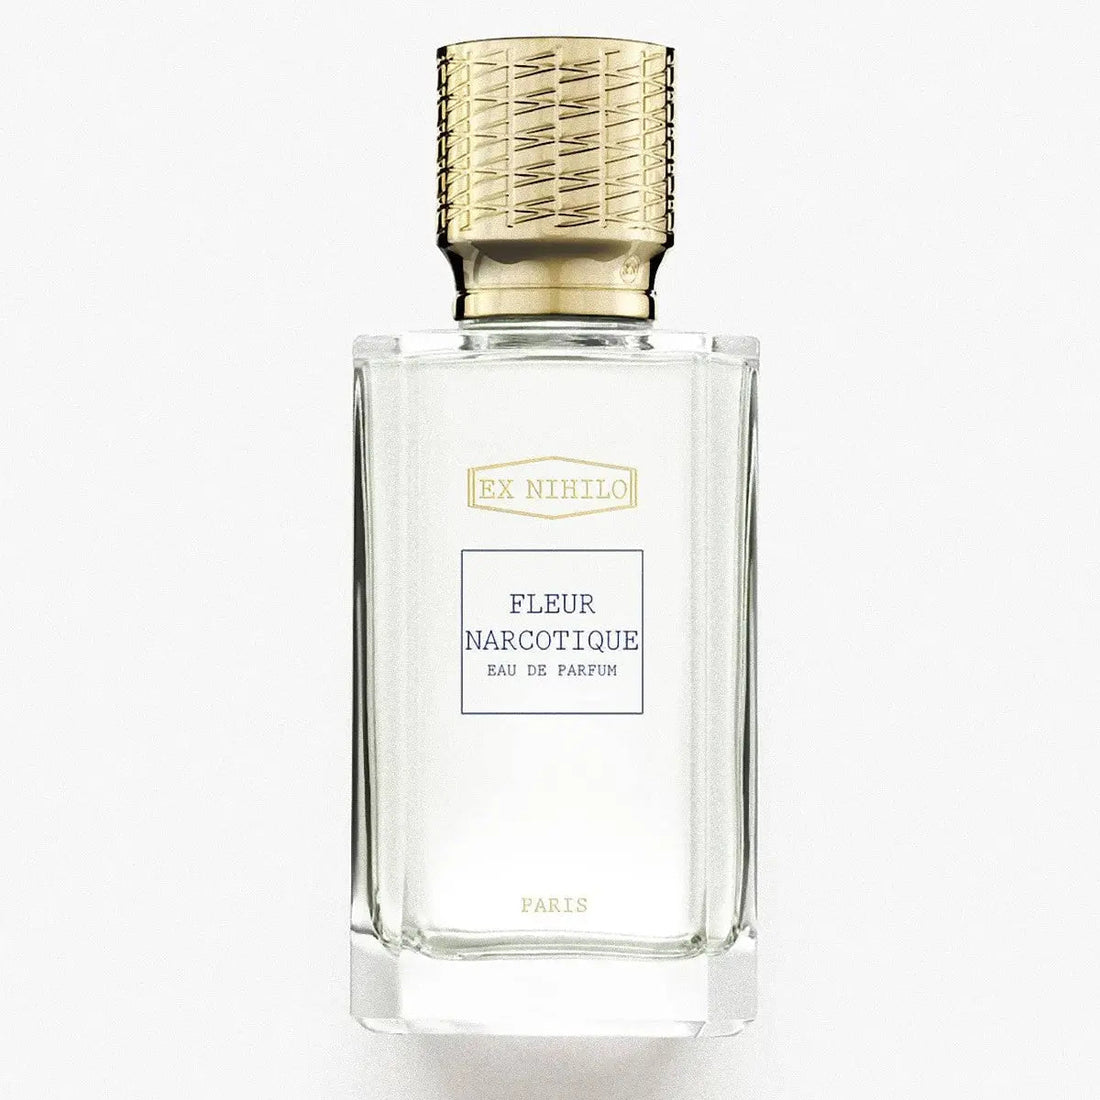 Ex nihilo Fleur Narcotique Musk Eau de Parfum – 100 ml